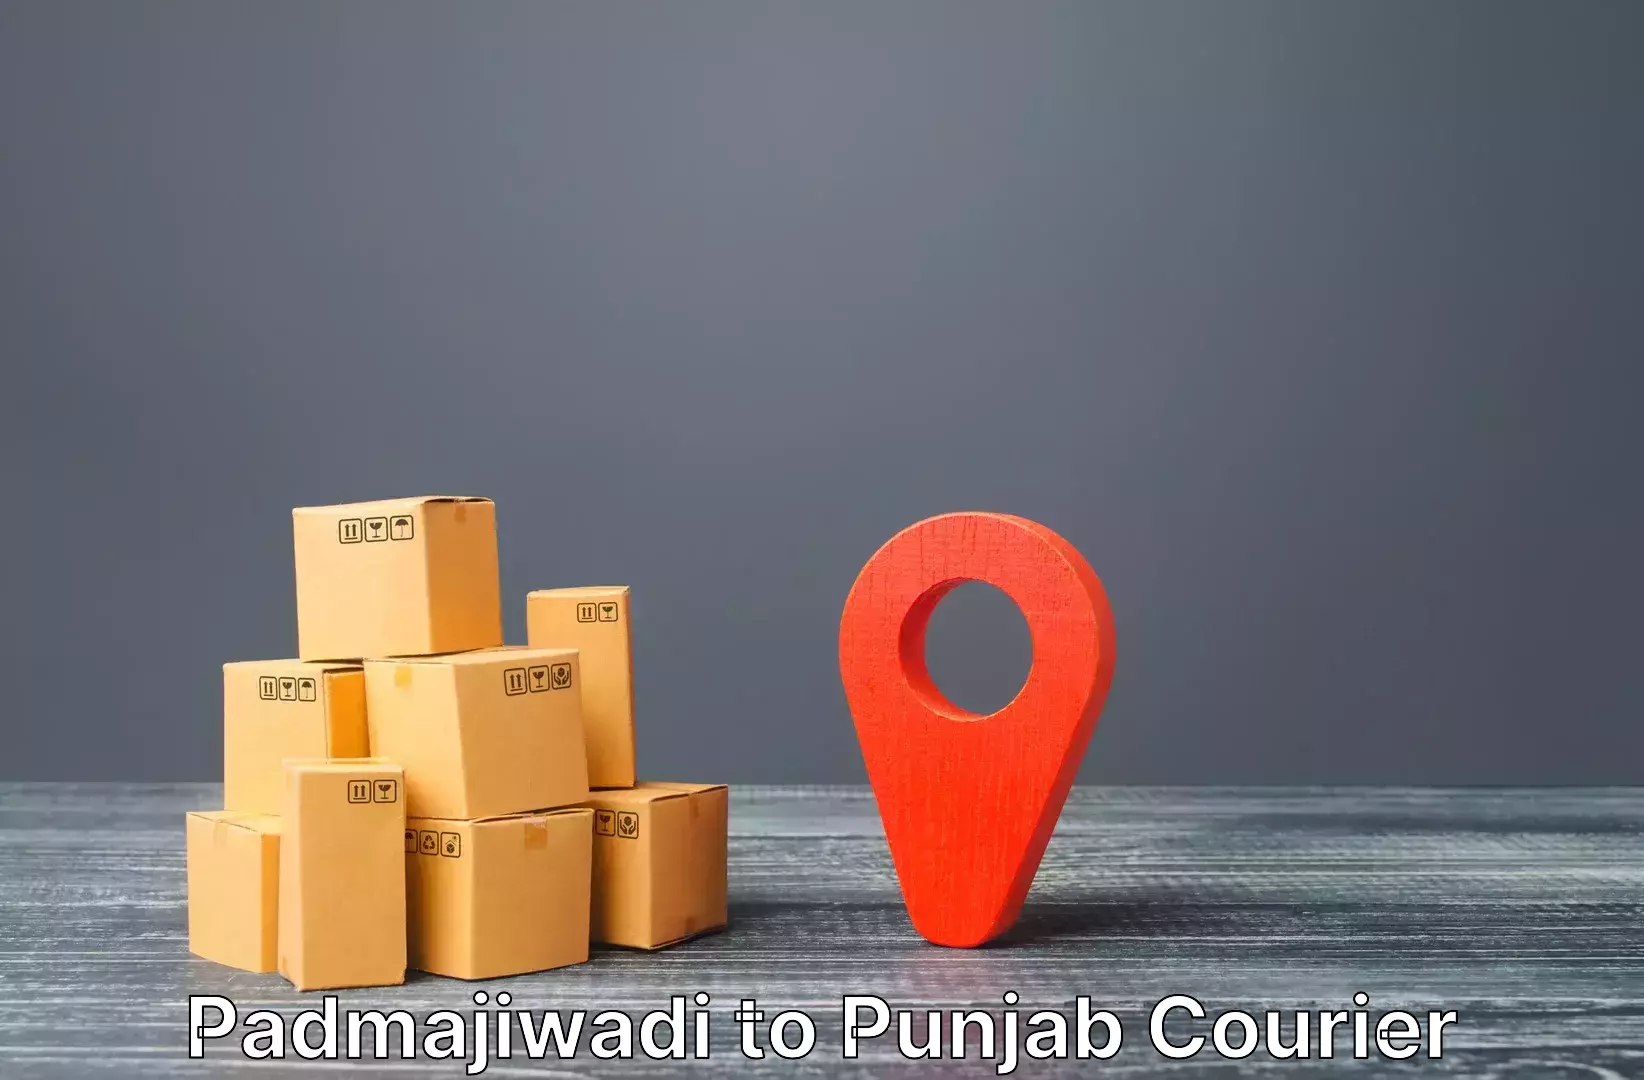 Safe luggage delivery Padmajiwadi to Punjab